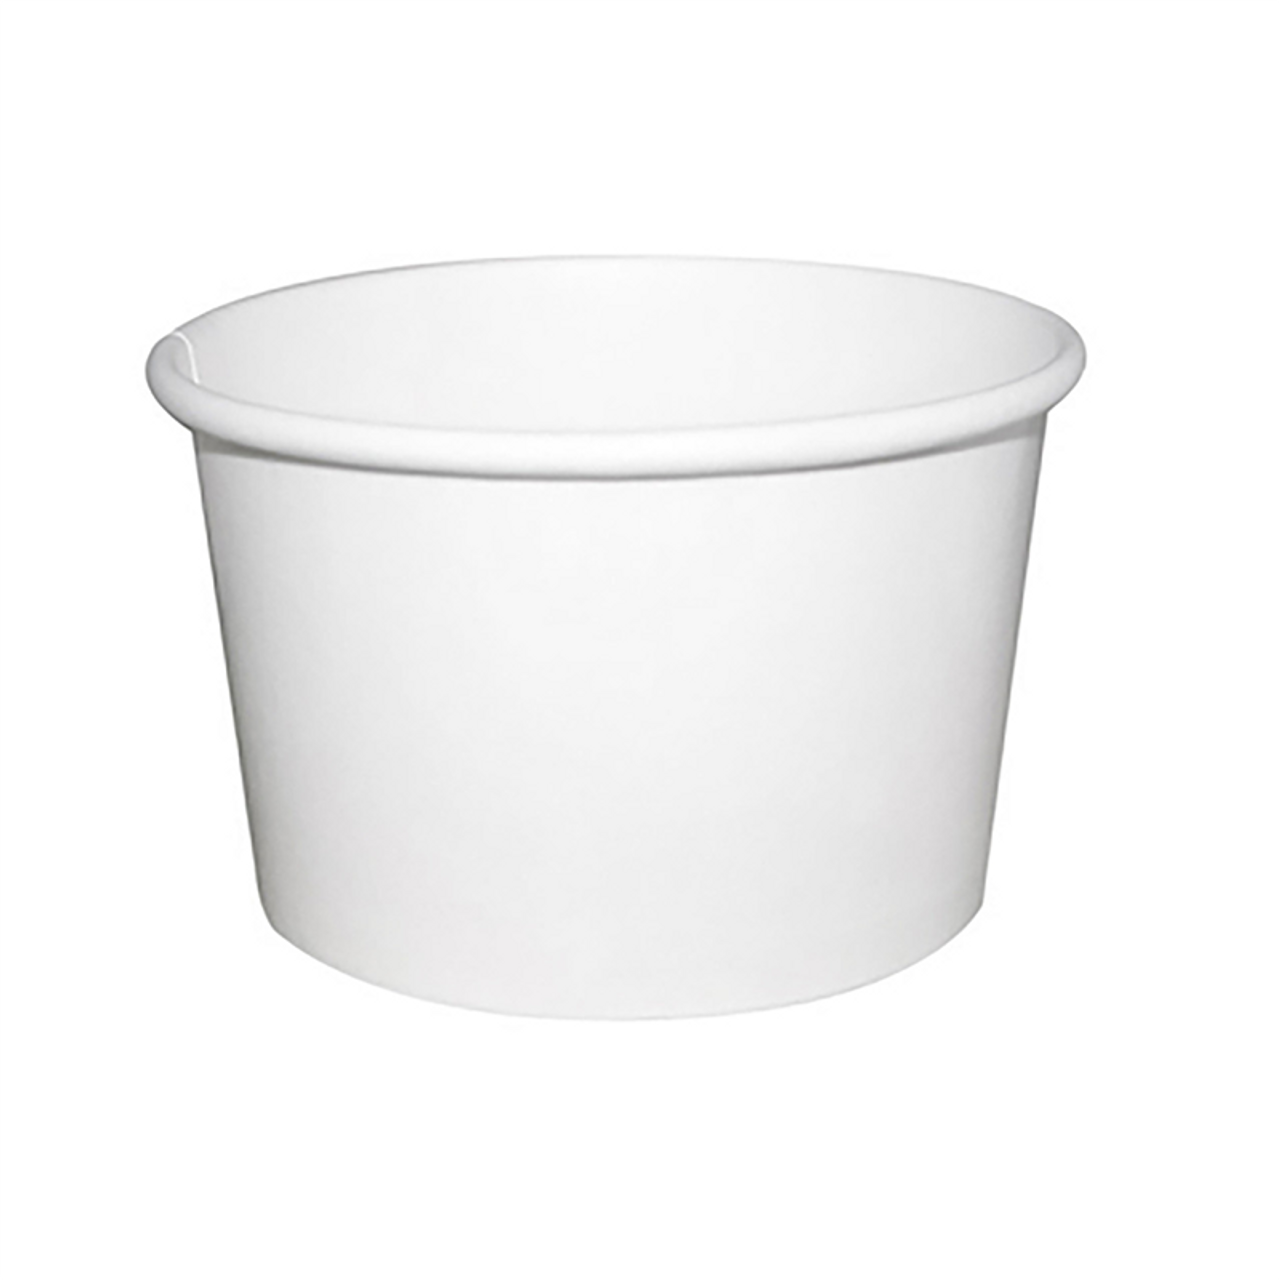 8 oz Disposable White Paper Soup Container 500pcs